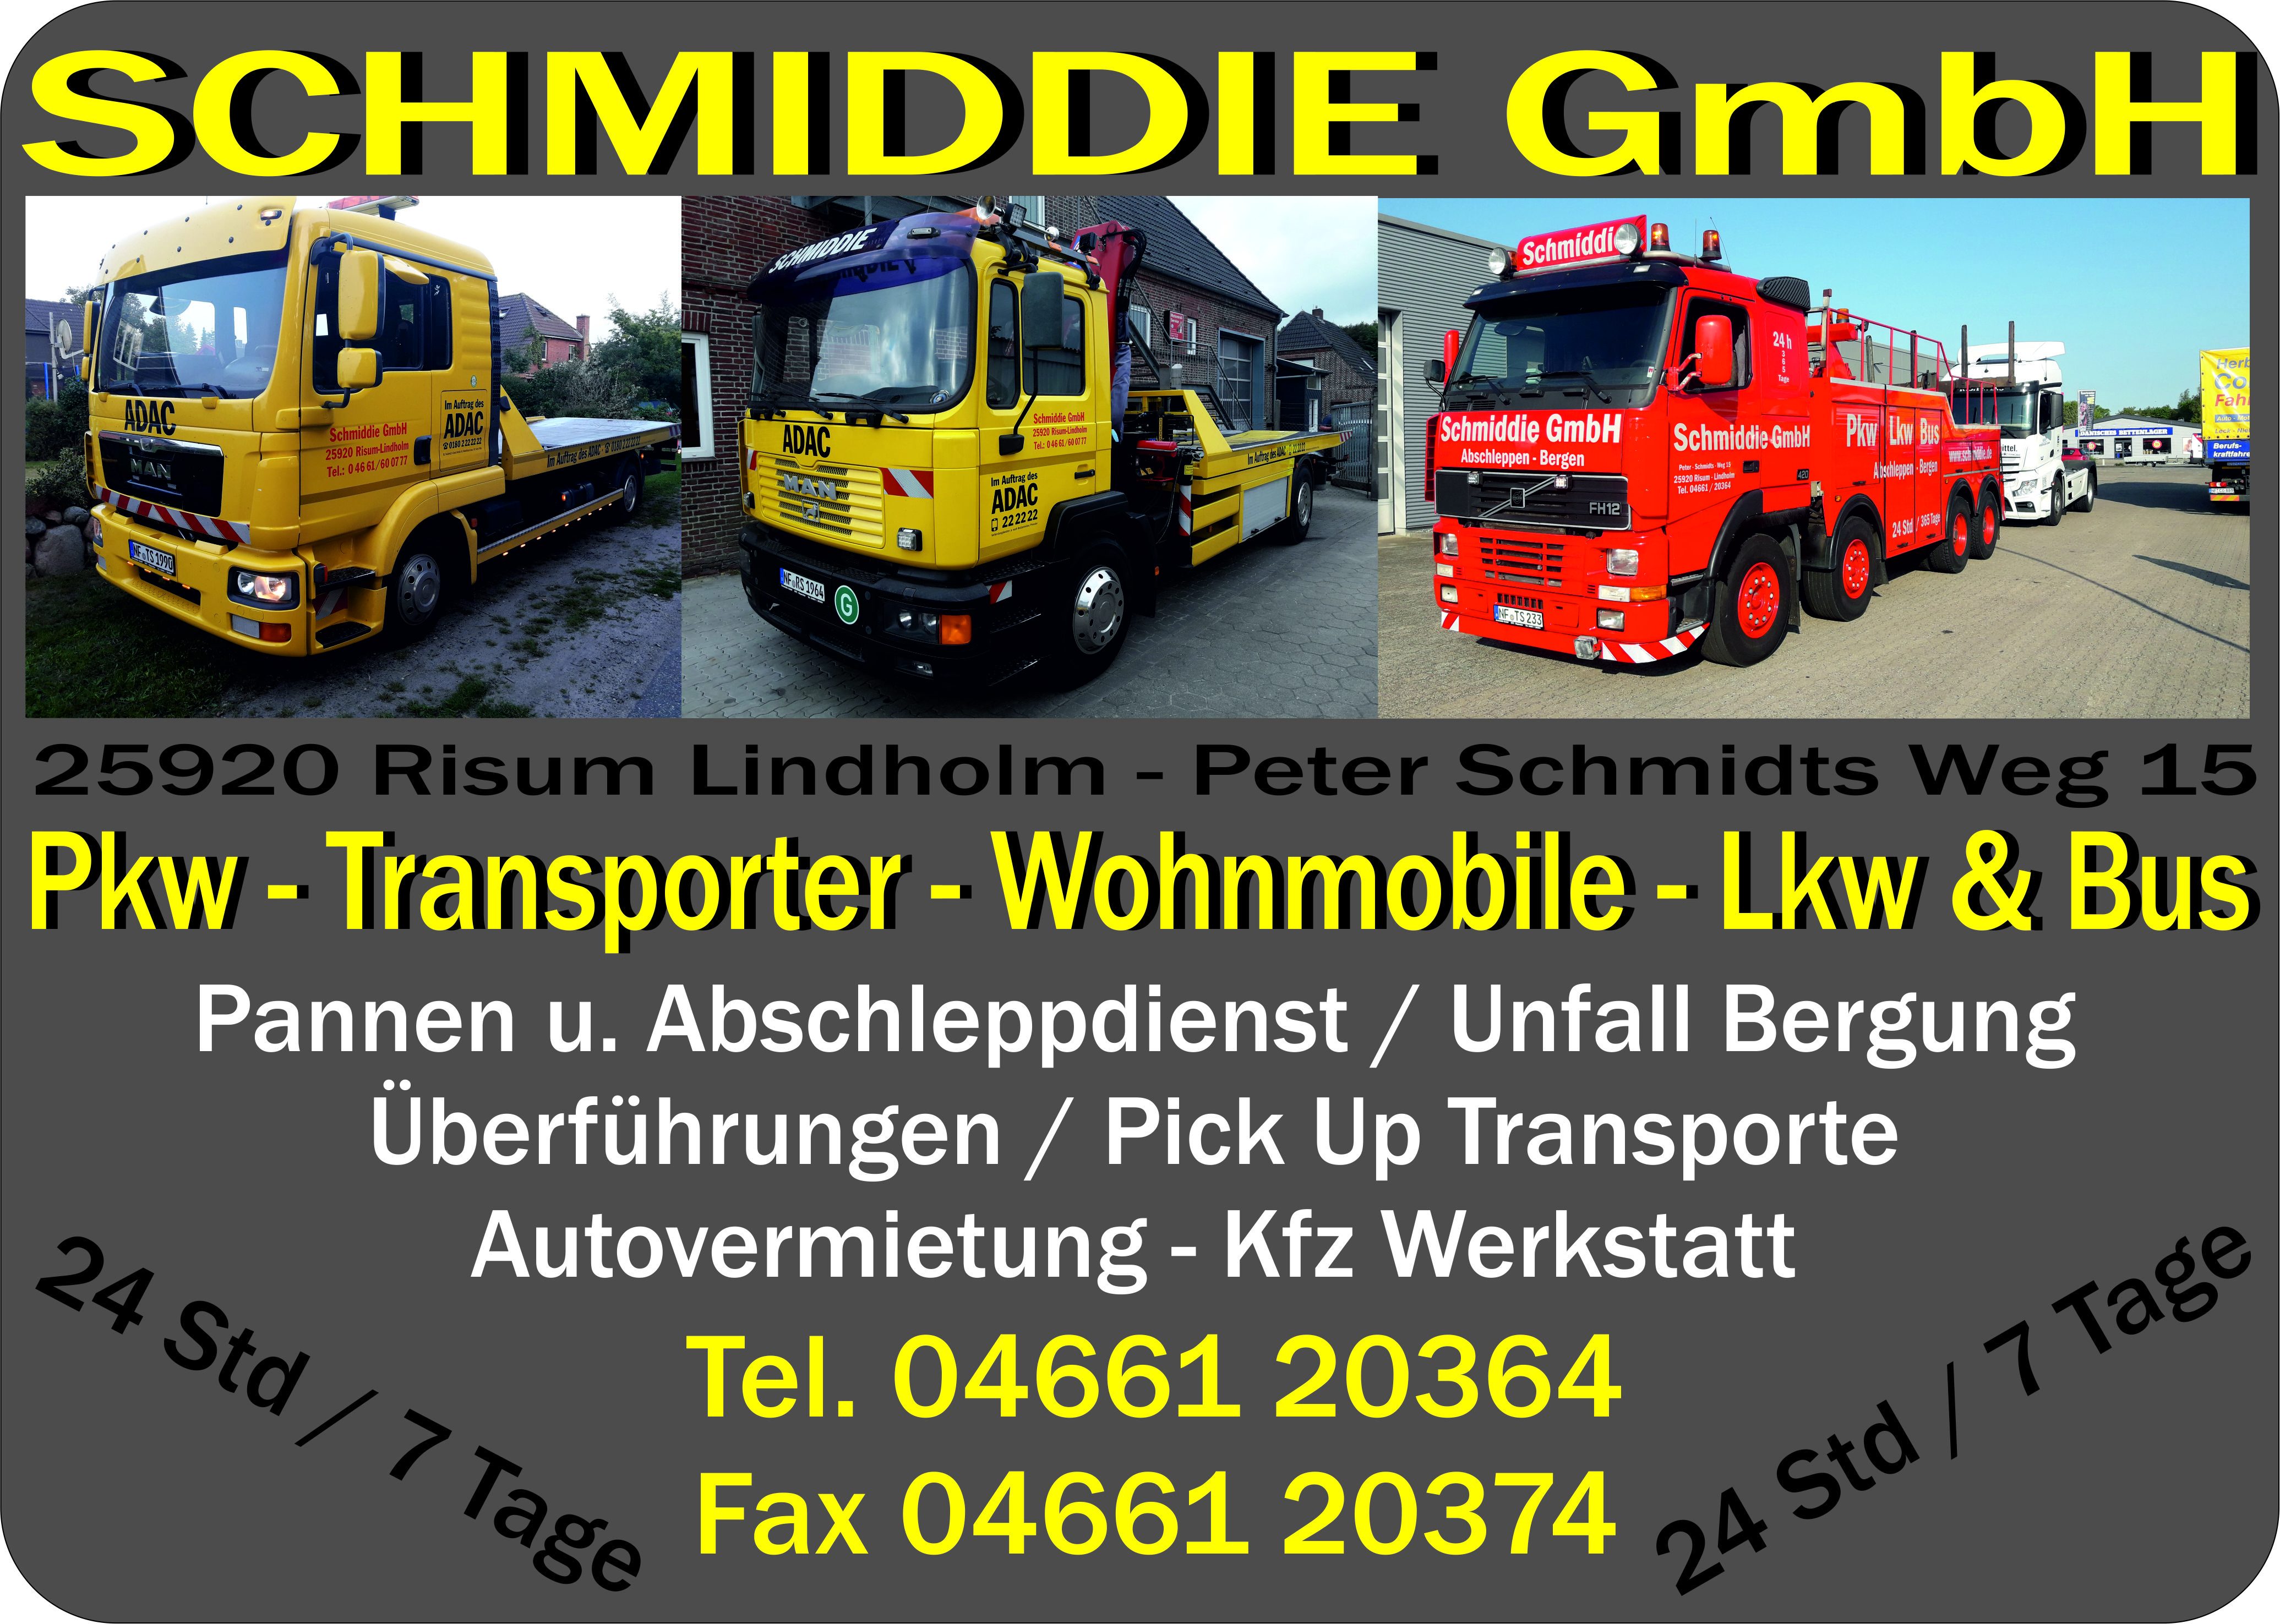 Schmiddie GmbH